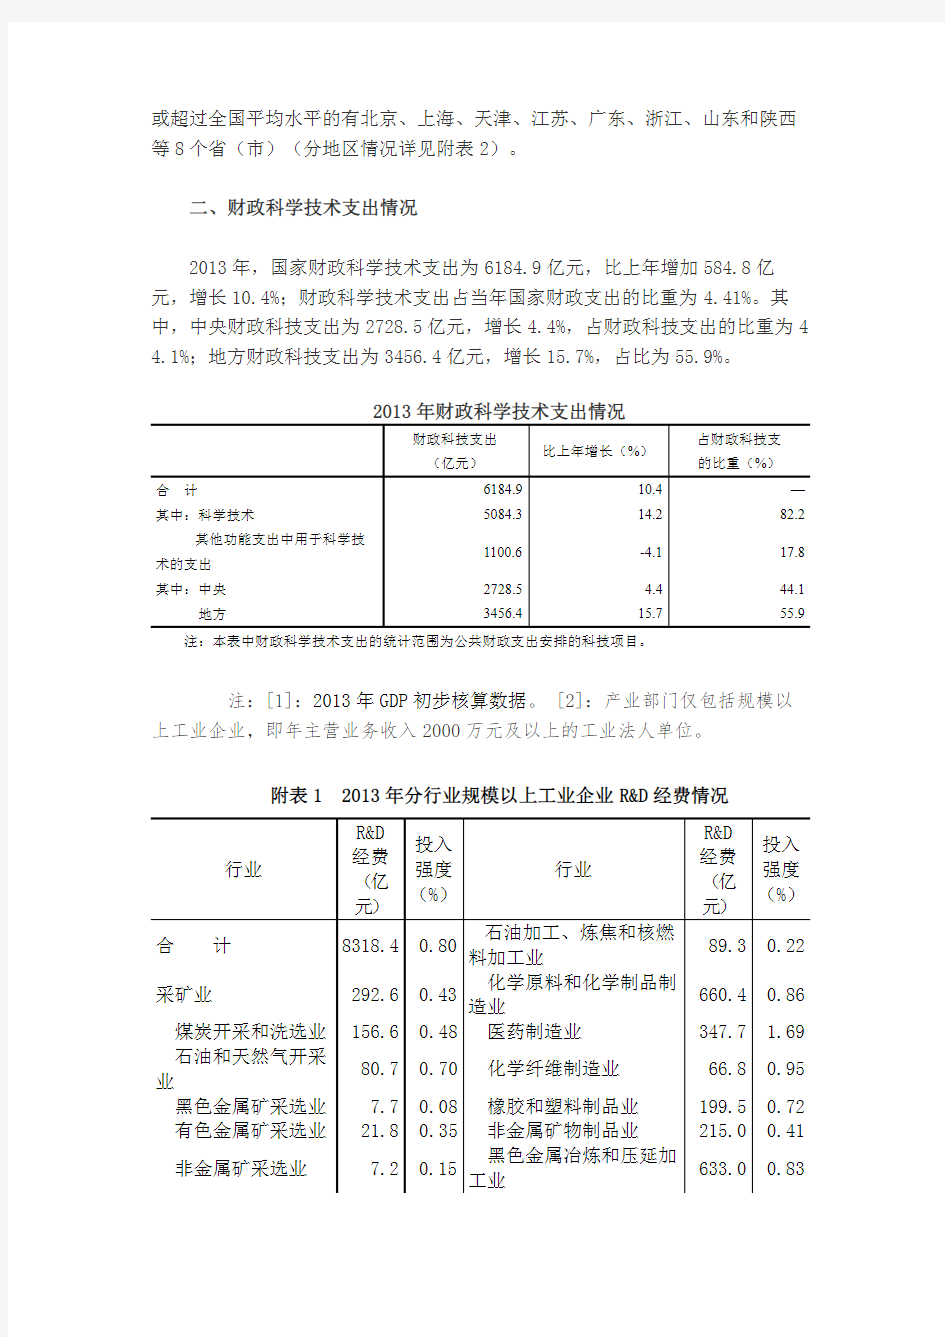 2013年全国科技经费投入统计公报-中国科技统计